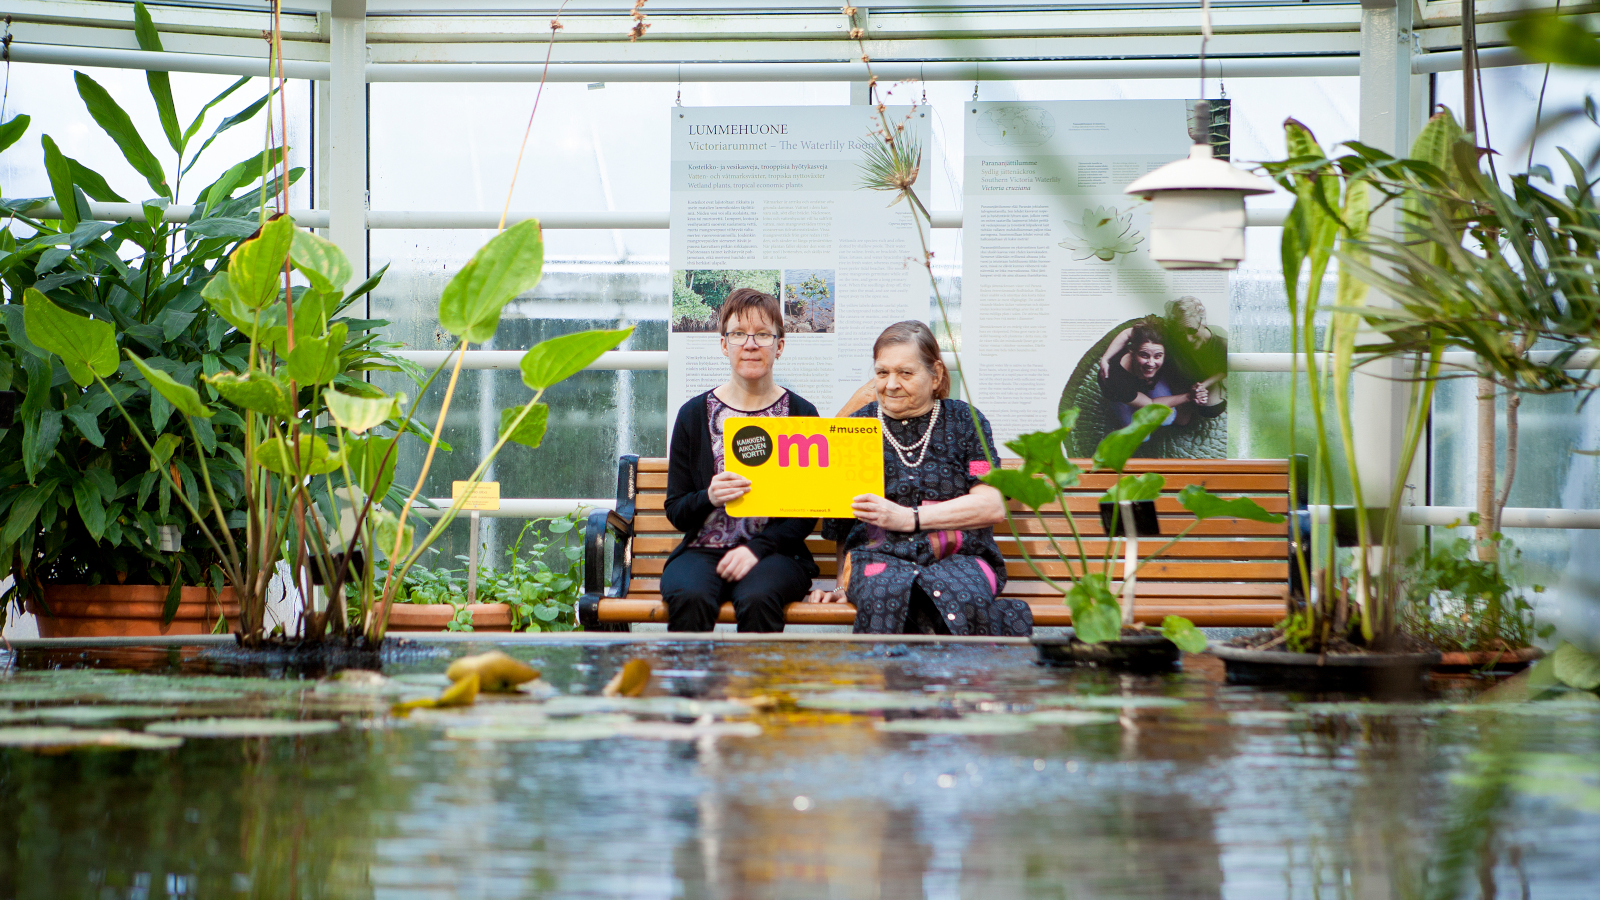 Kuvassa on kaksi naista istumassa iso museokortti kädessään ja he istuvat vesialtaan äärellä. Altaan vieressä on viherkasveja.